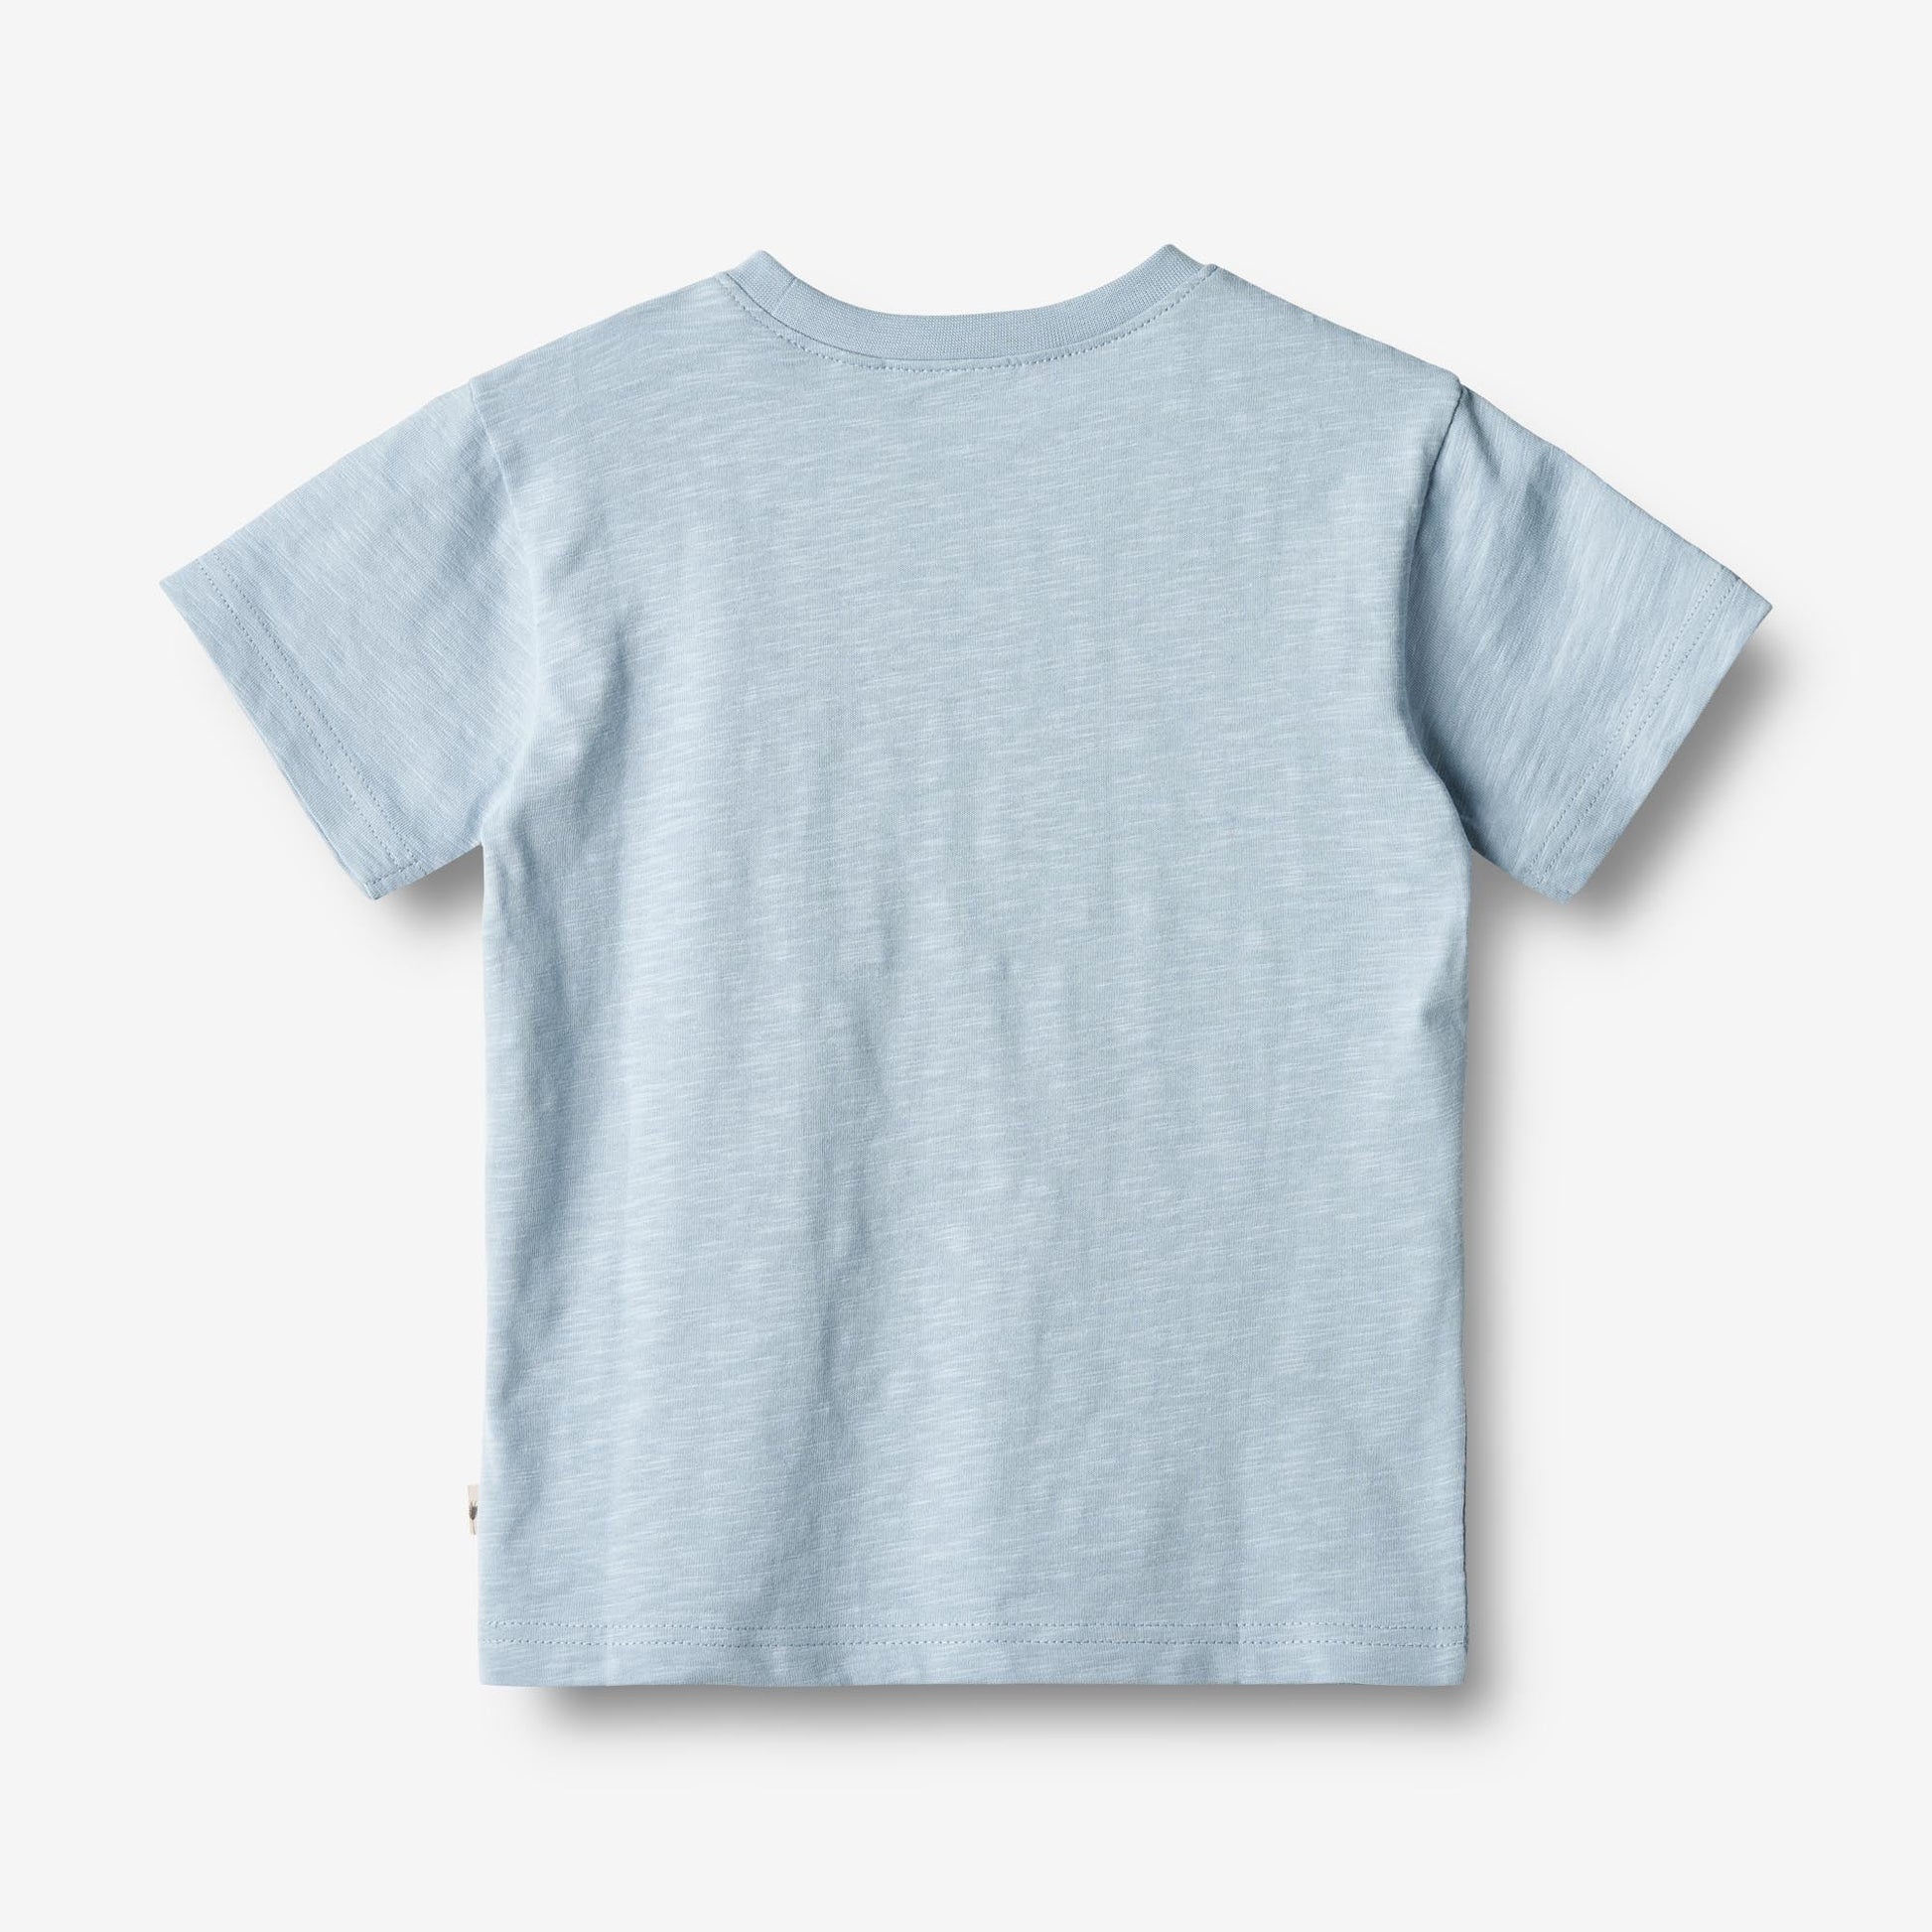 Wheat 'Dac' Children's T-Shirt - Blue Summer